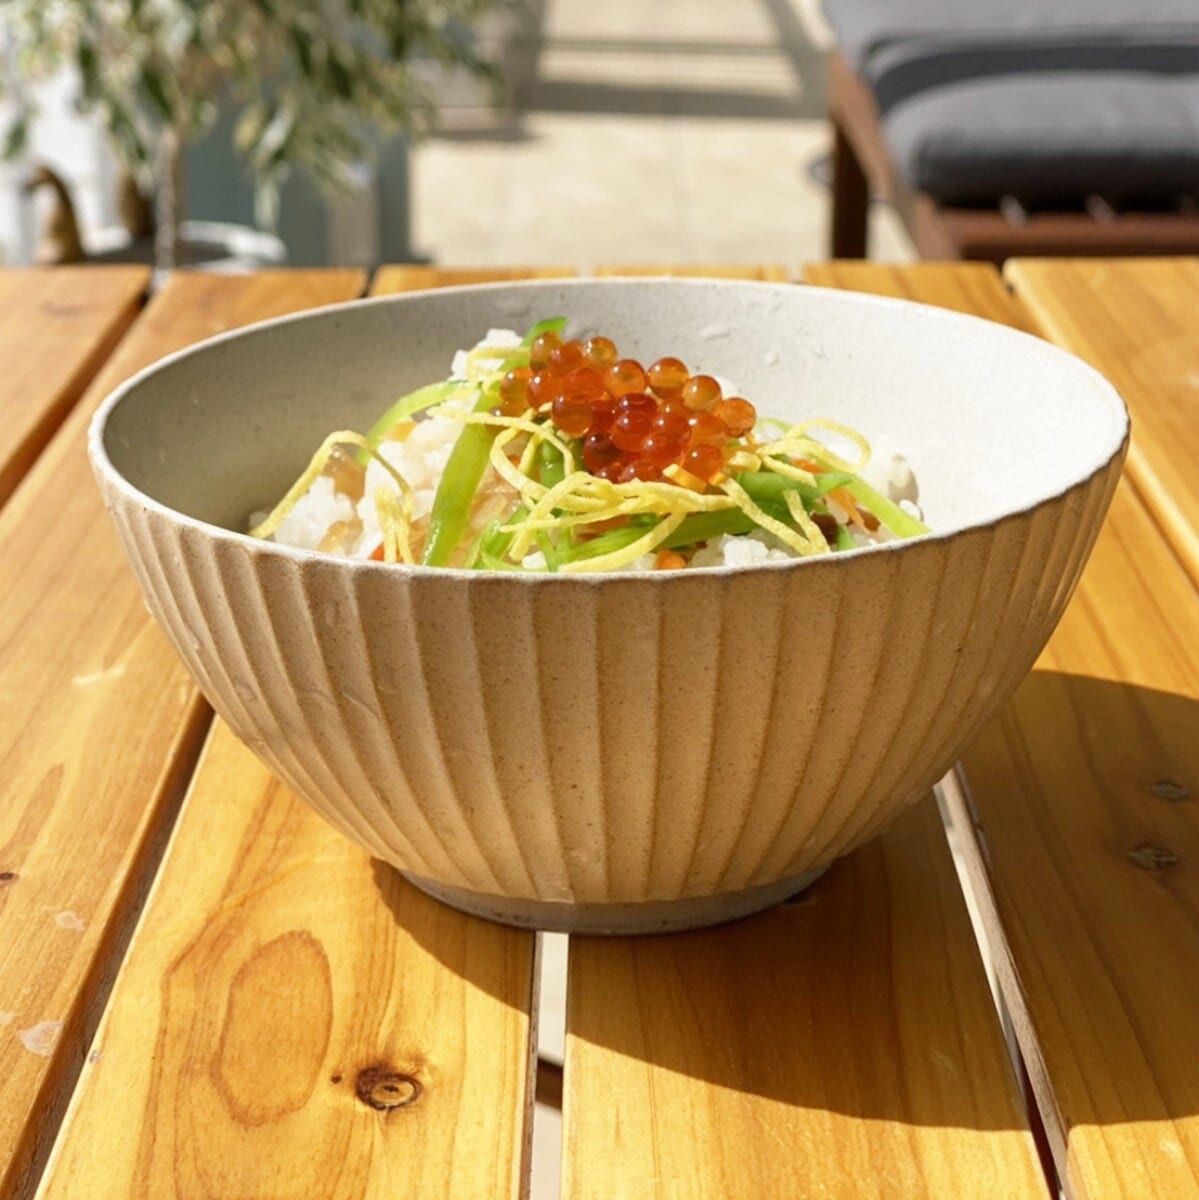 Mitanitouki Handmade Minoware Cafe Vibe Small Rice Bowl, Pair of 2